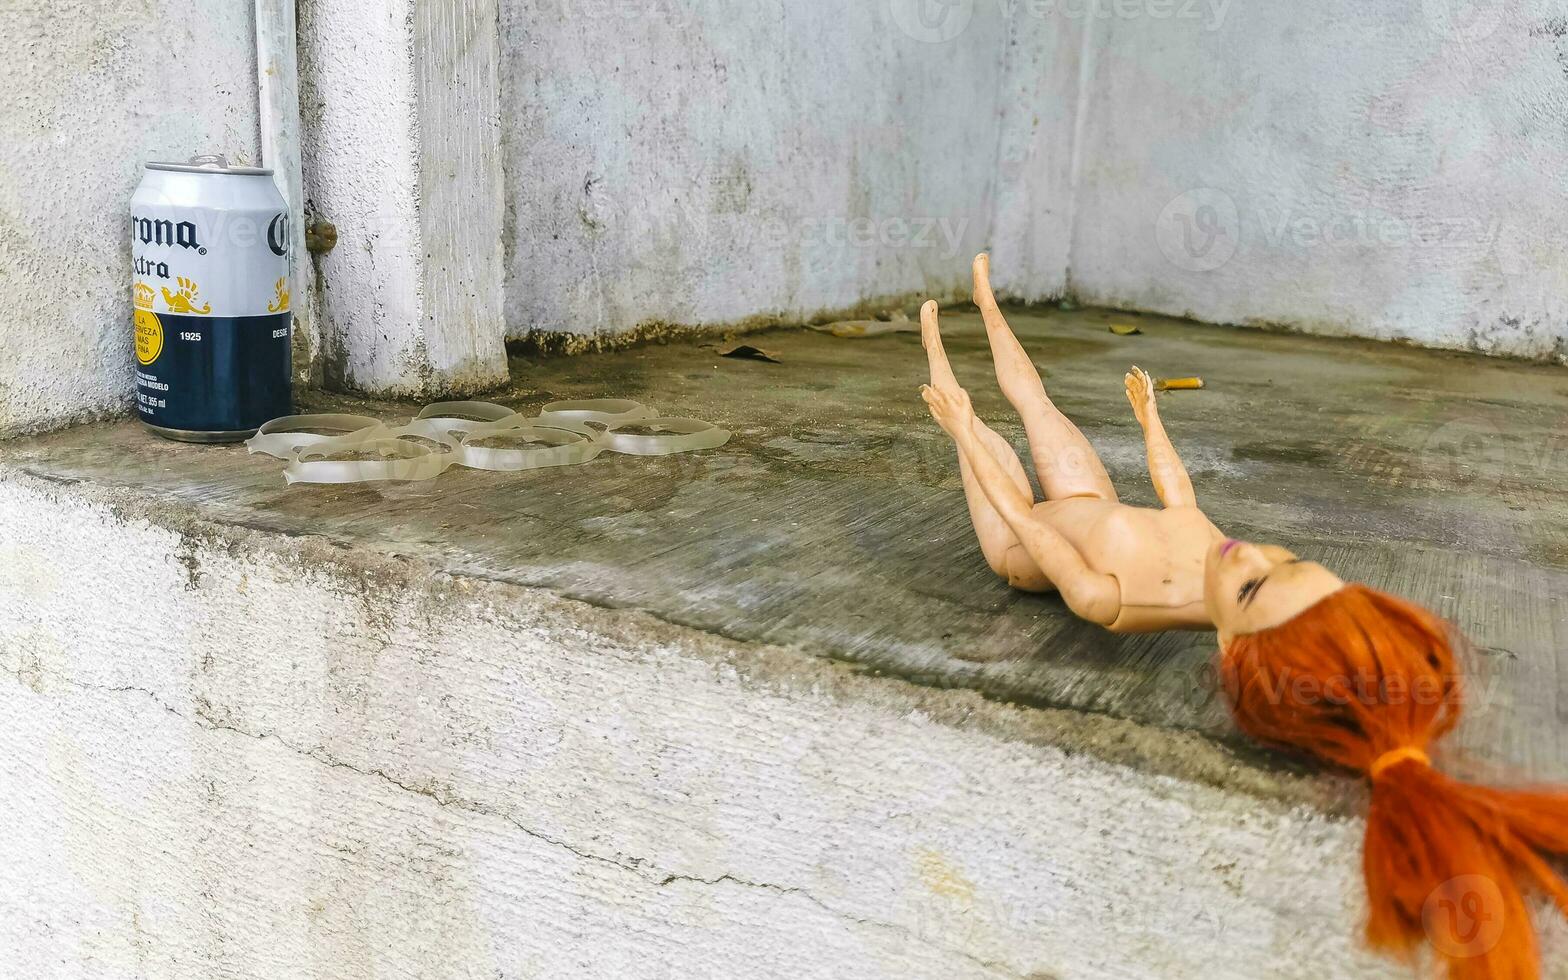 nu sale Barbie poupée jouet à l'extérieur sur le sol Mexique. photo